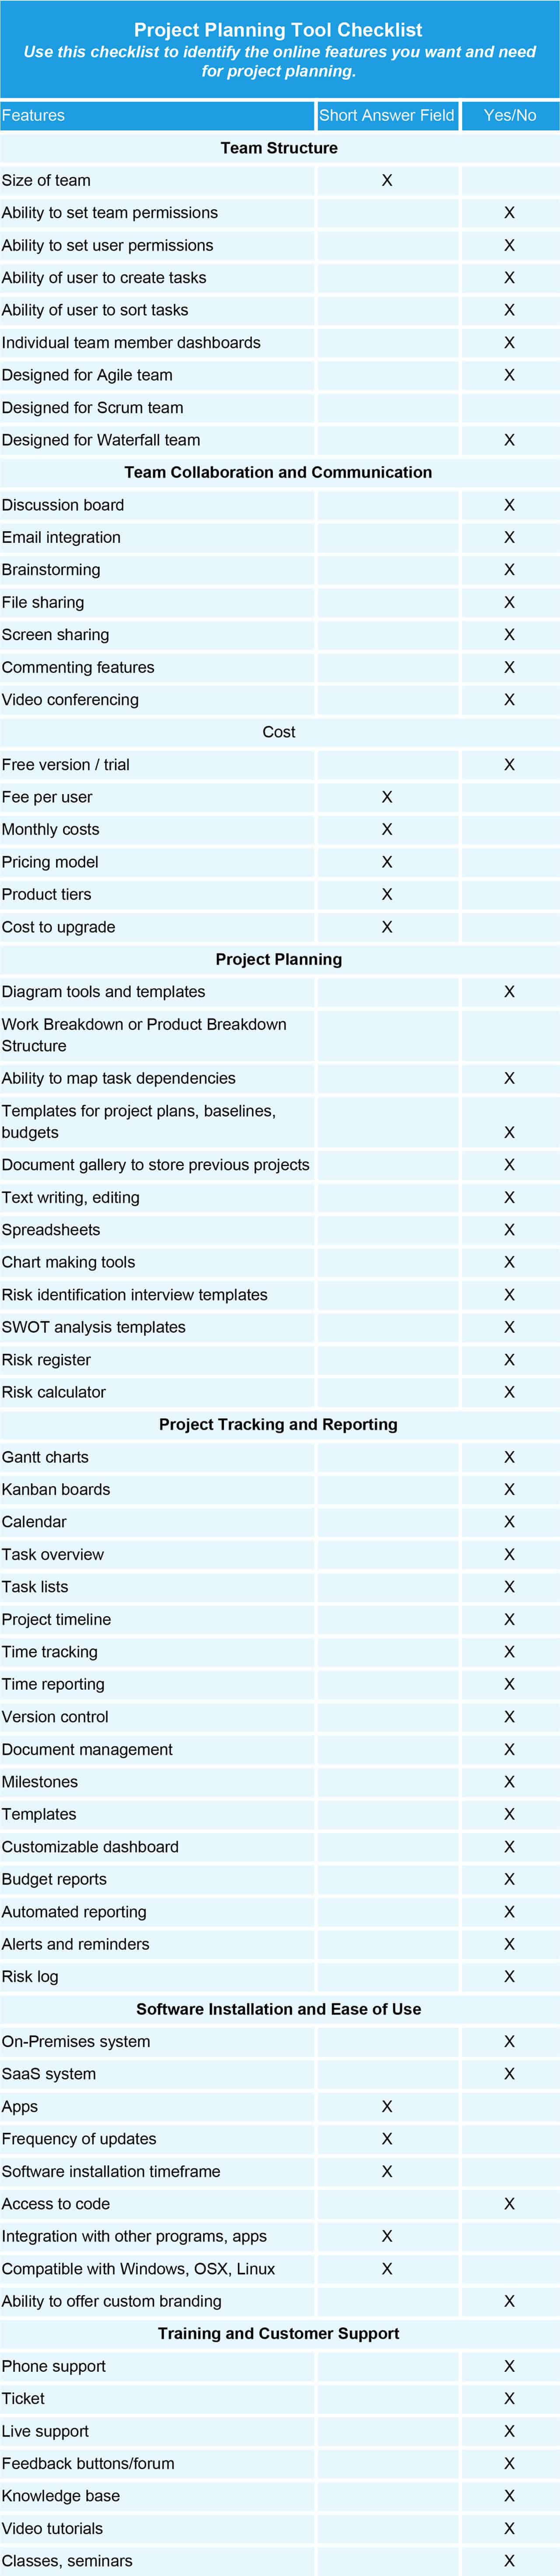 项目策划工具核对表